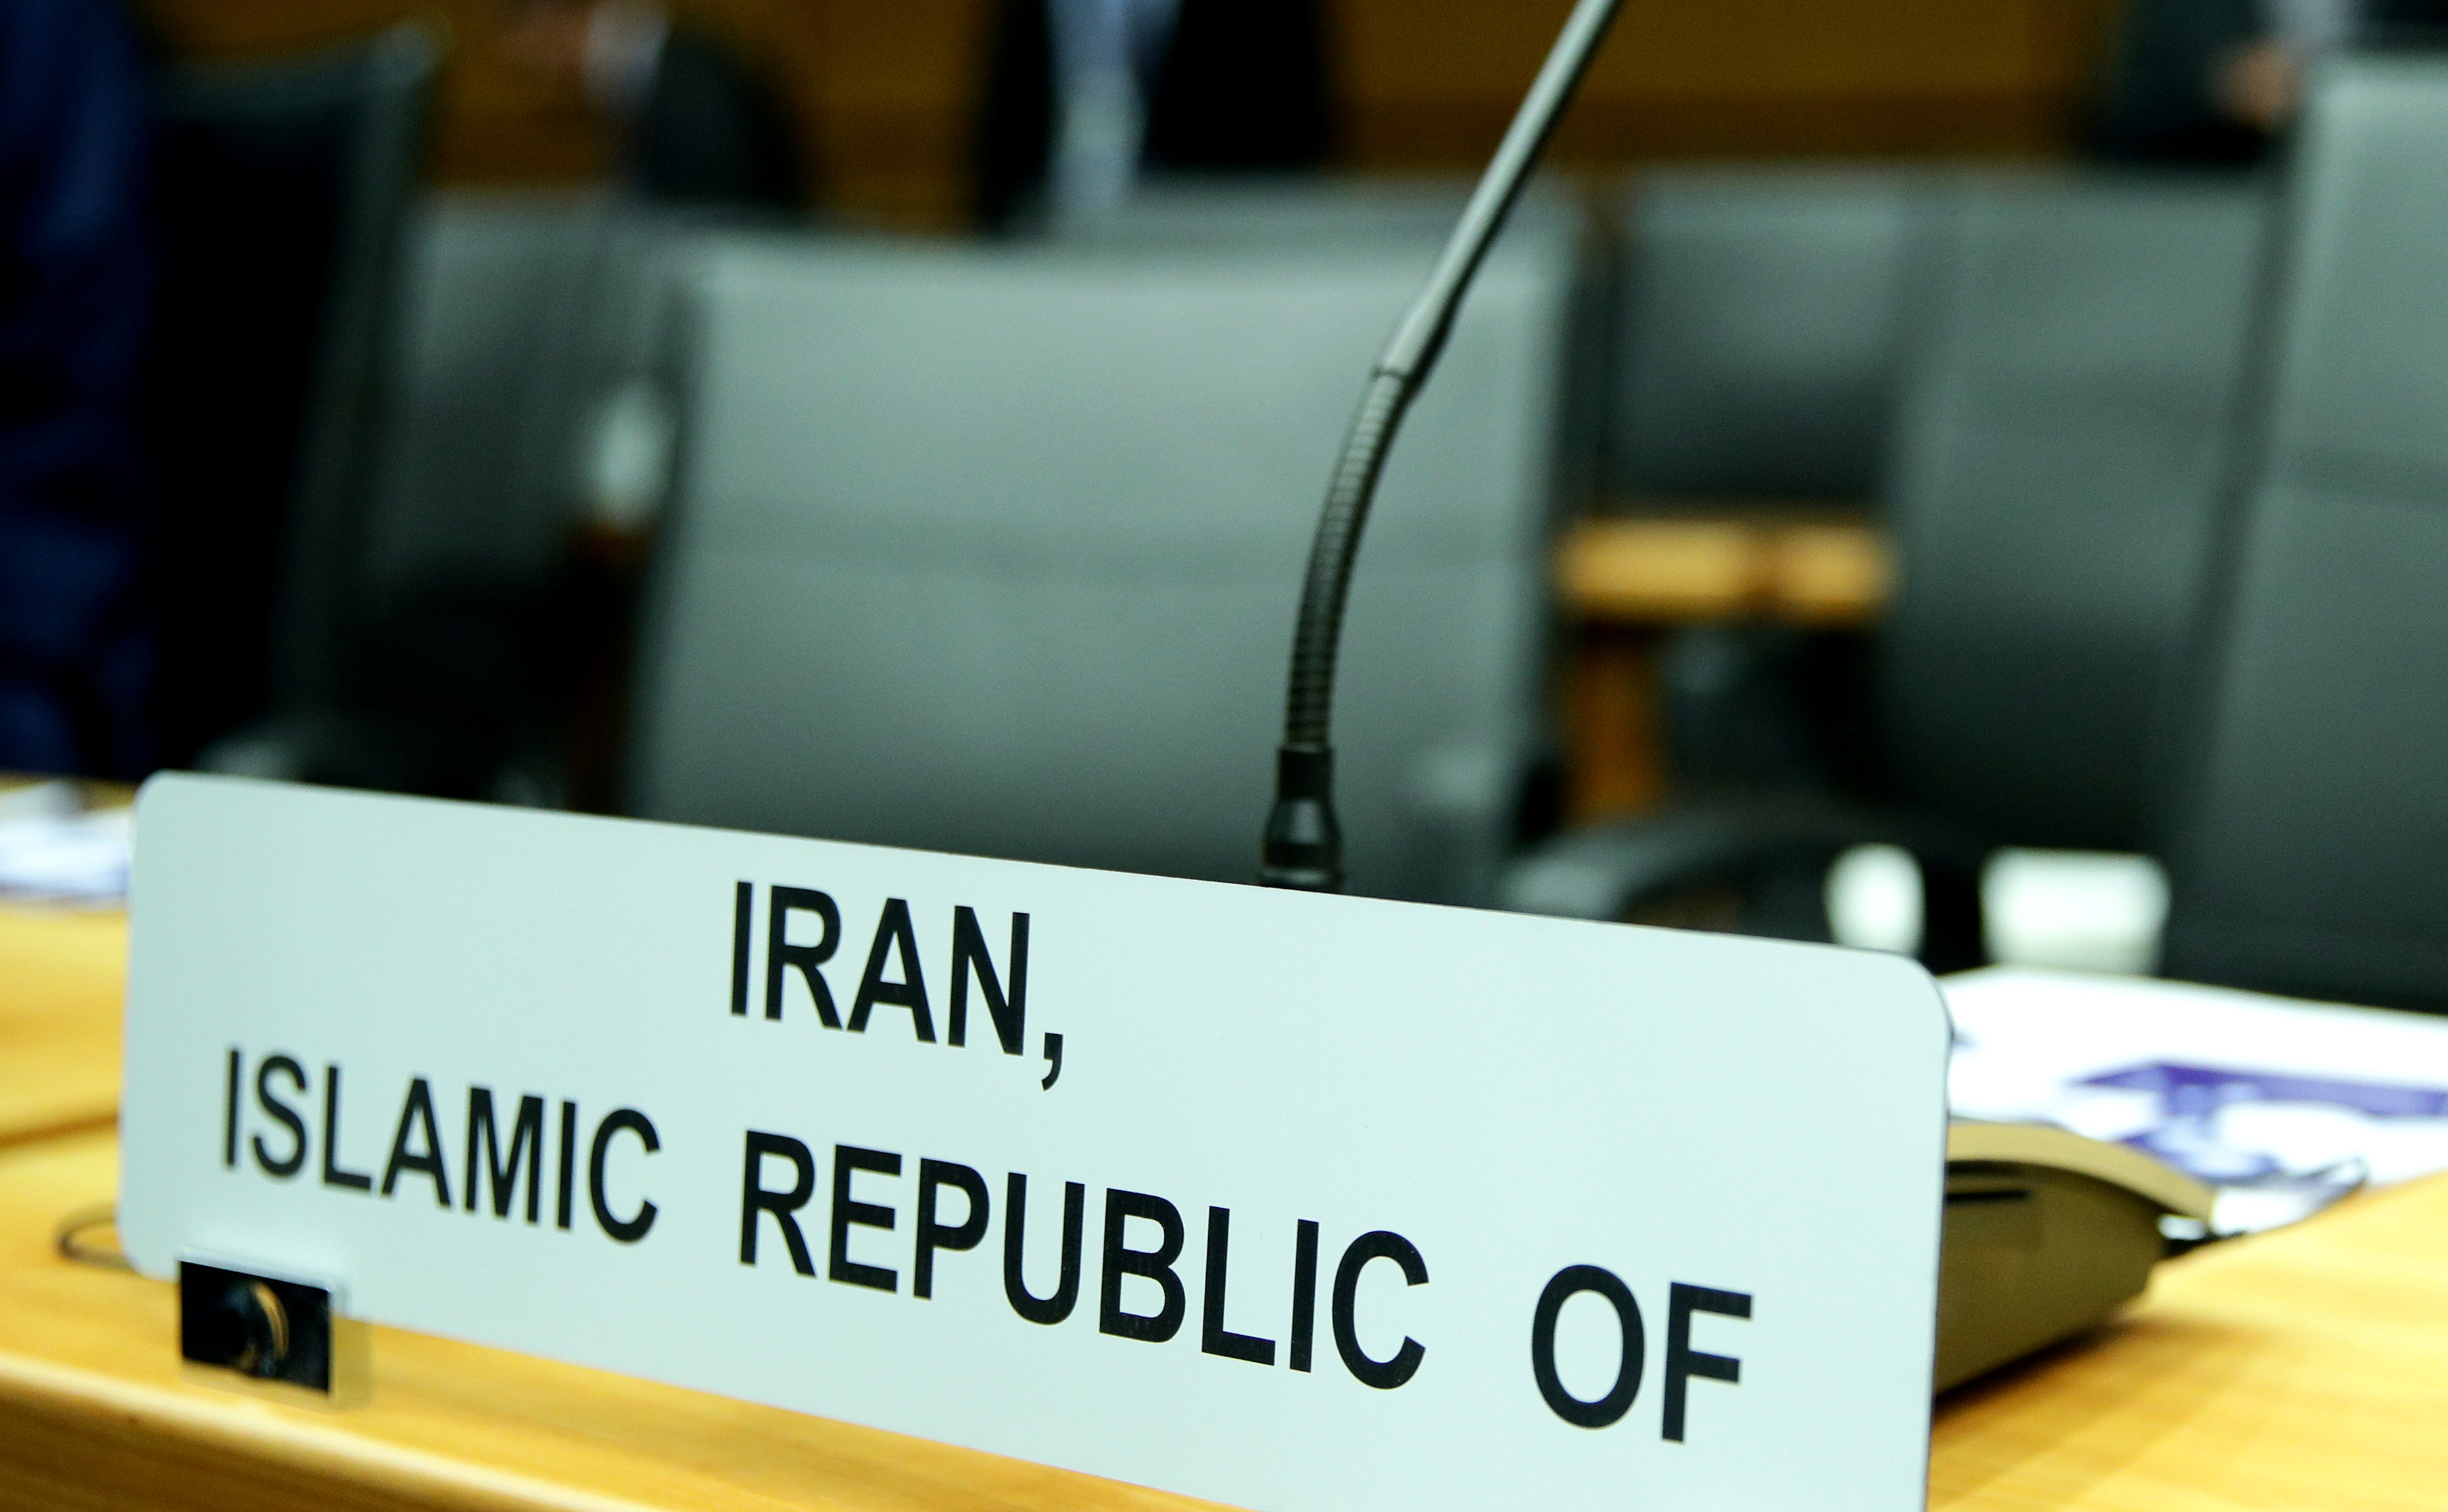 ABD nin İran a karşı yaptırım önerisi BM de reddedildi #1